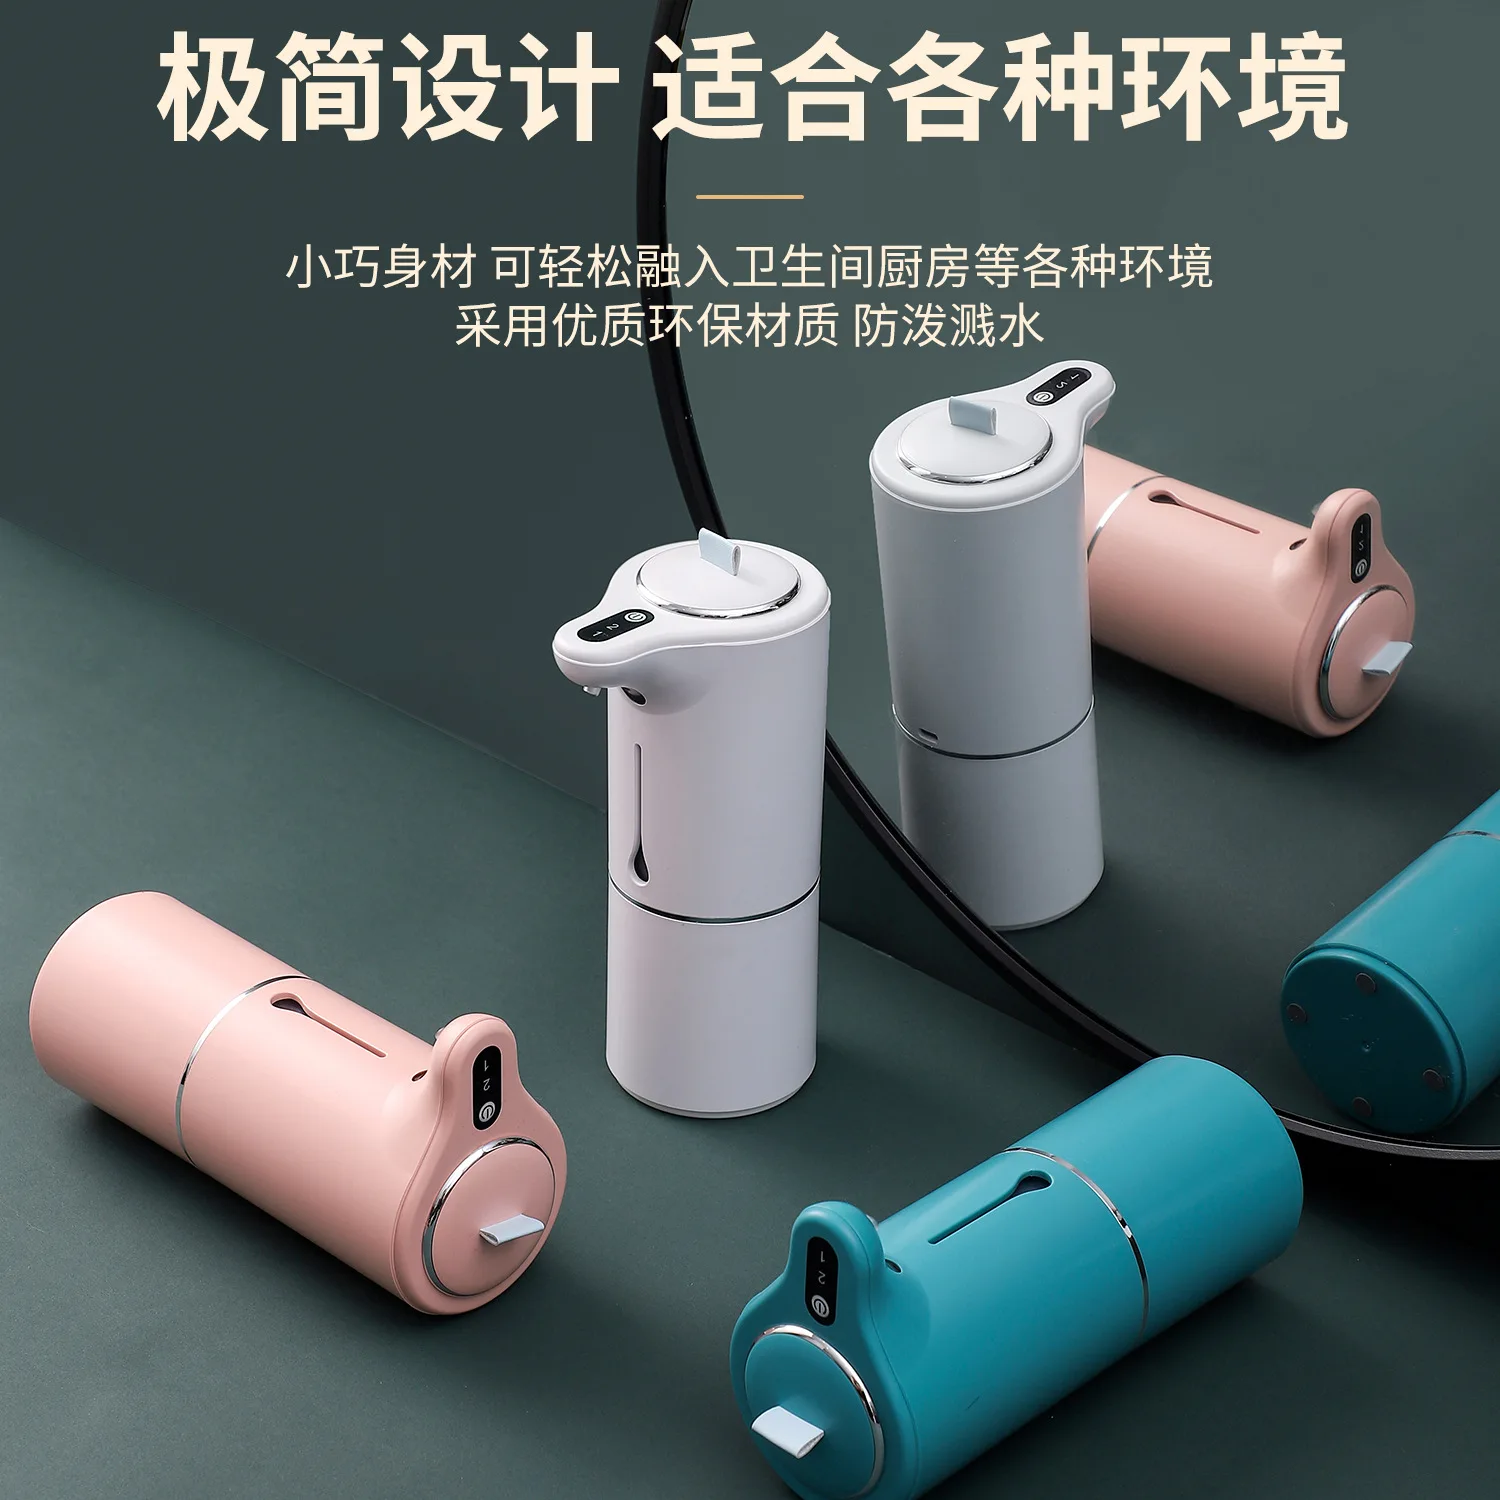 Новая интеллектуальная сенсорная пенная мойка для рук Xiaomi, водонепроницаемая бесконтактная мойка для рук для домашней ванной комнаты, кухни Изображение 4 